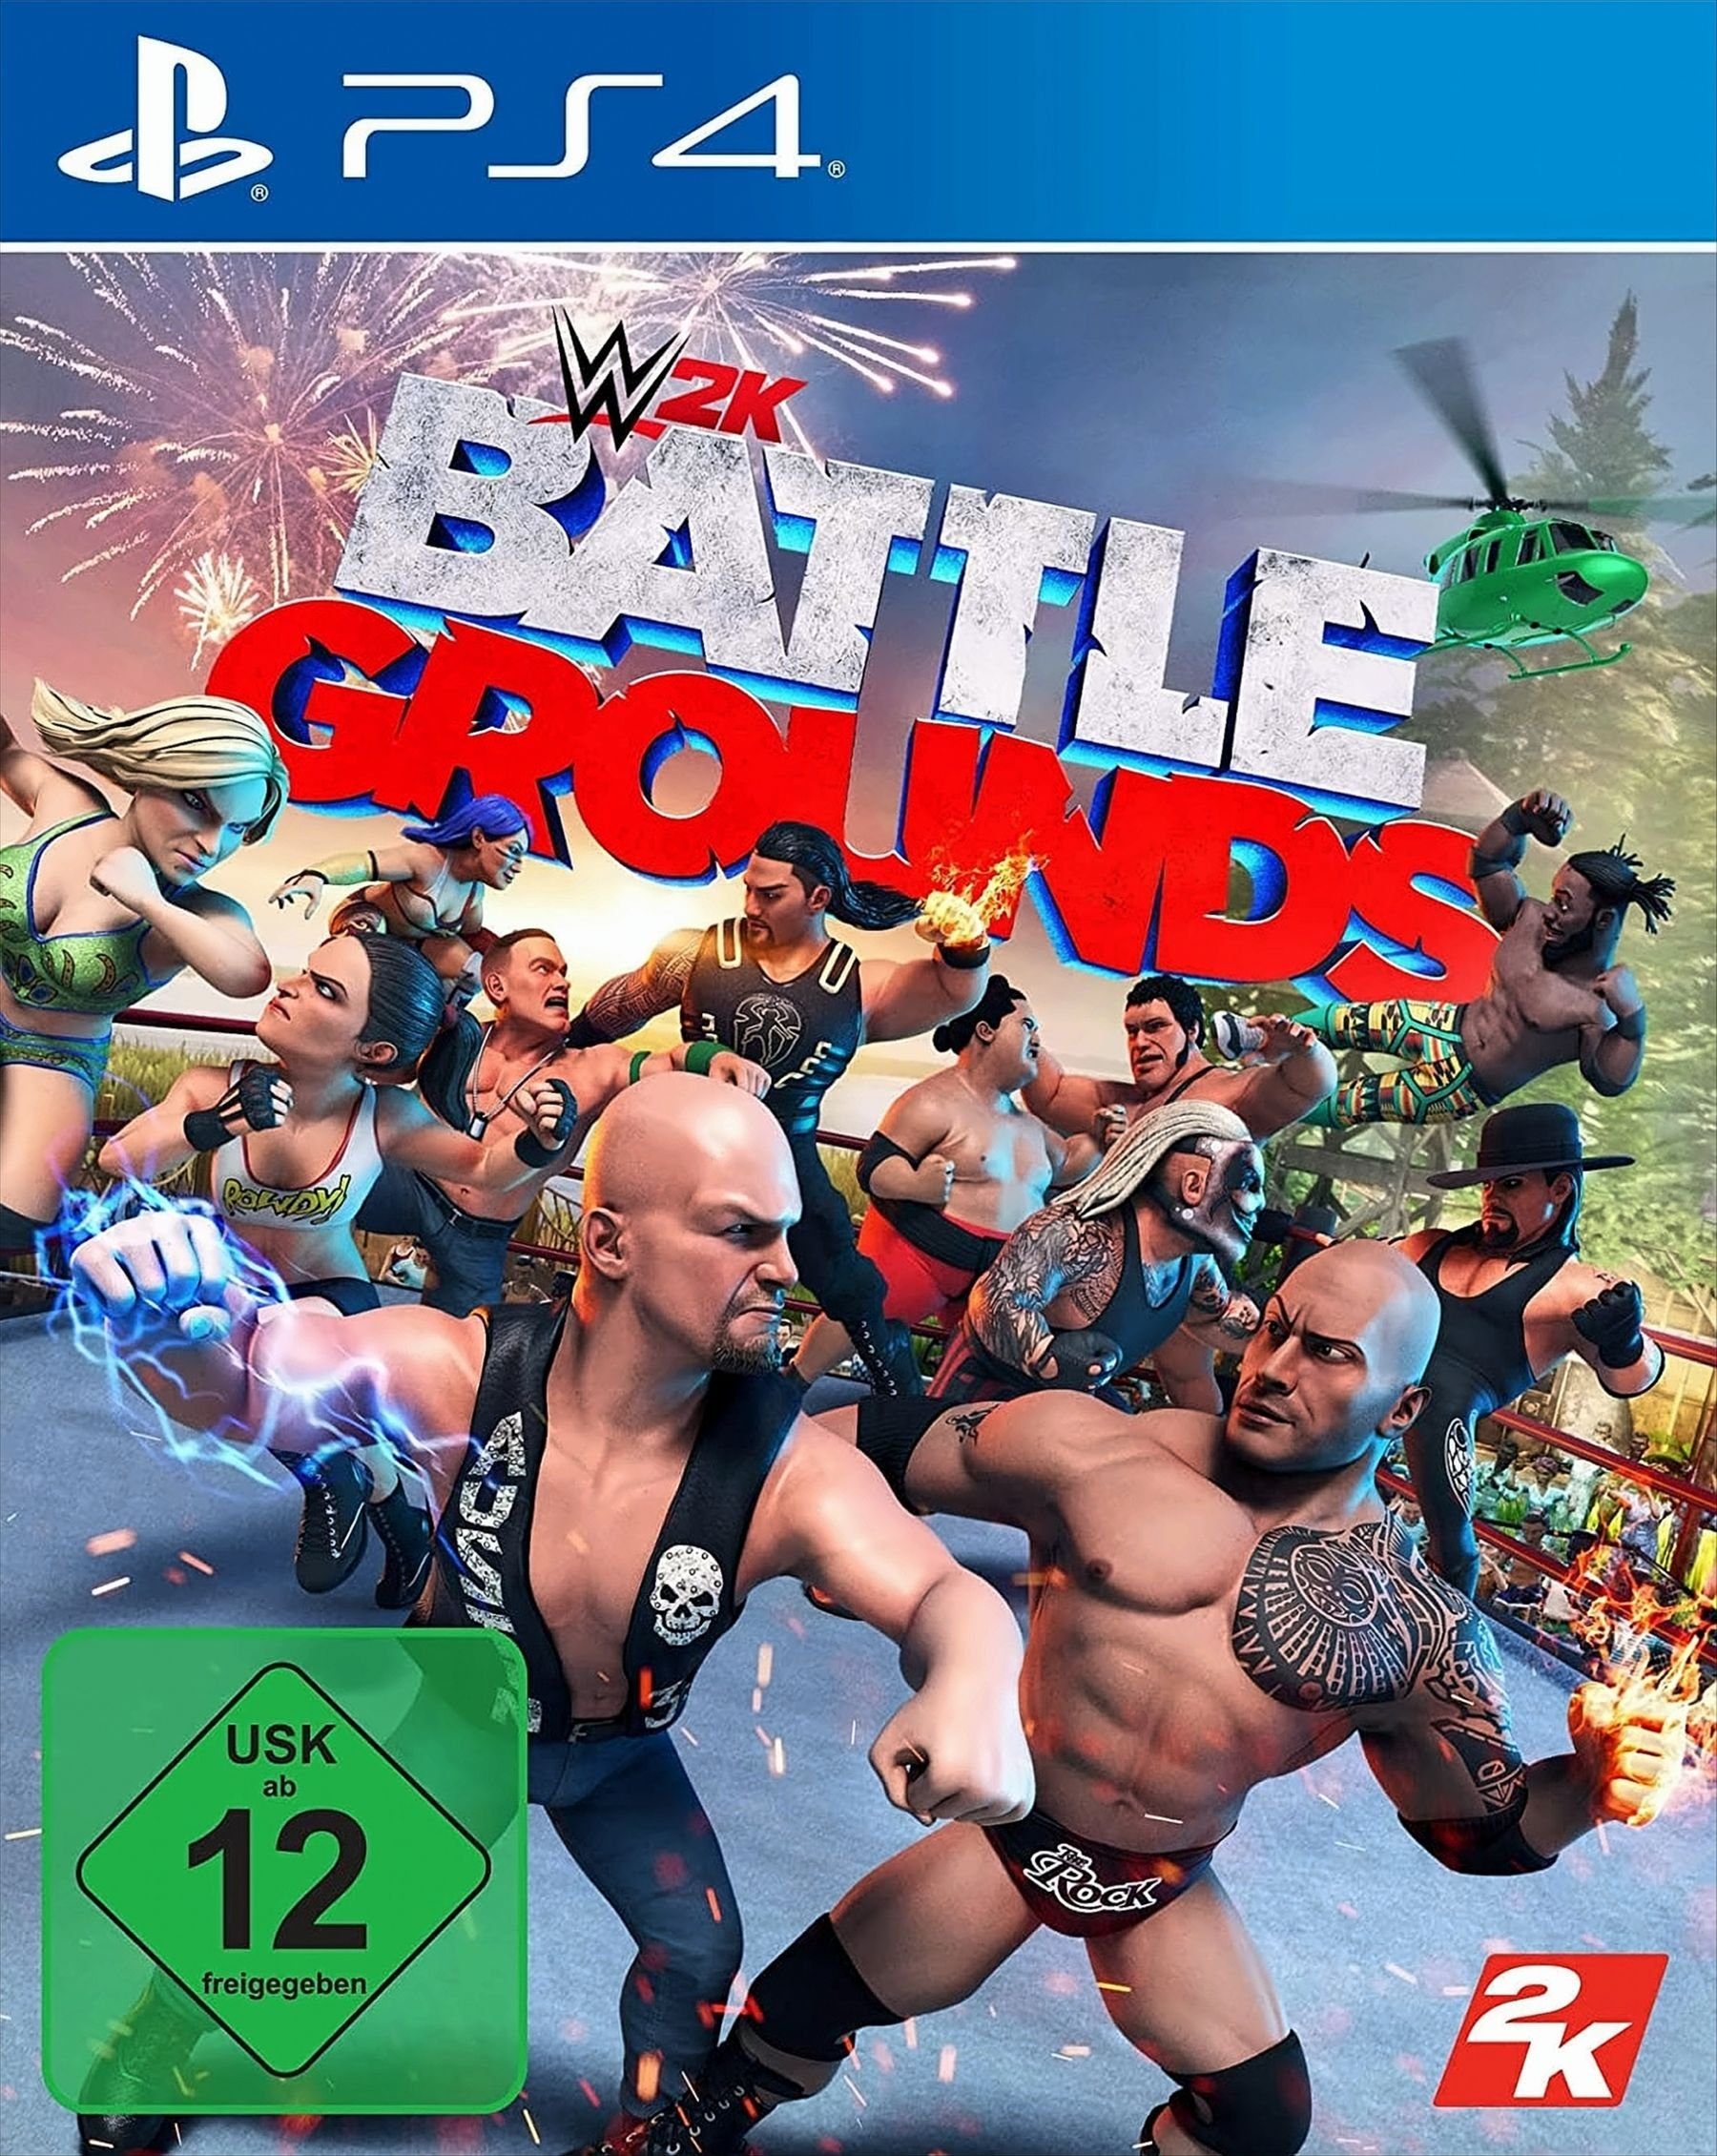 WWE 2K Battlegrounds PS4 Playstation 4